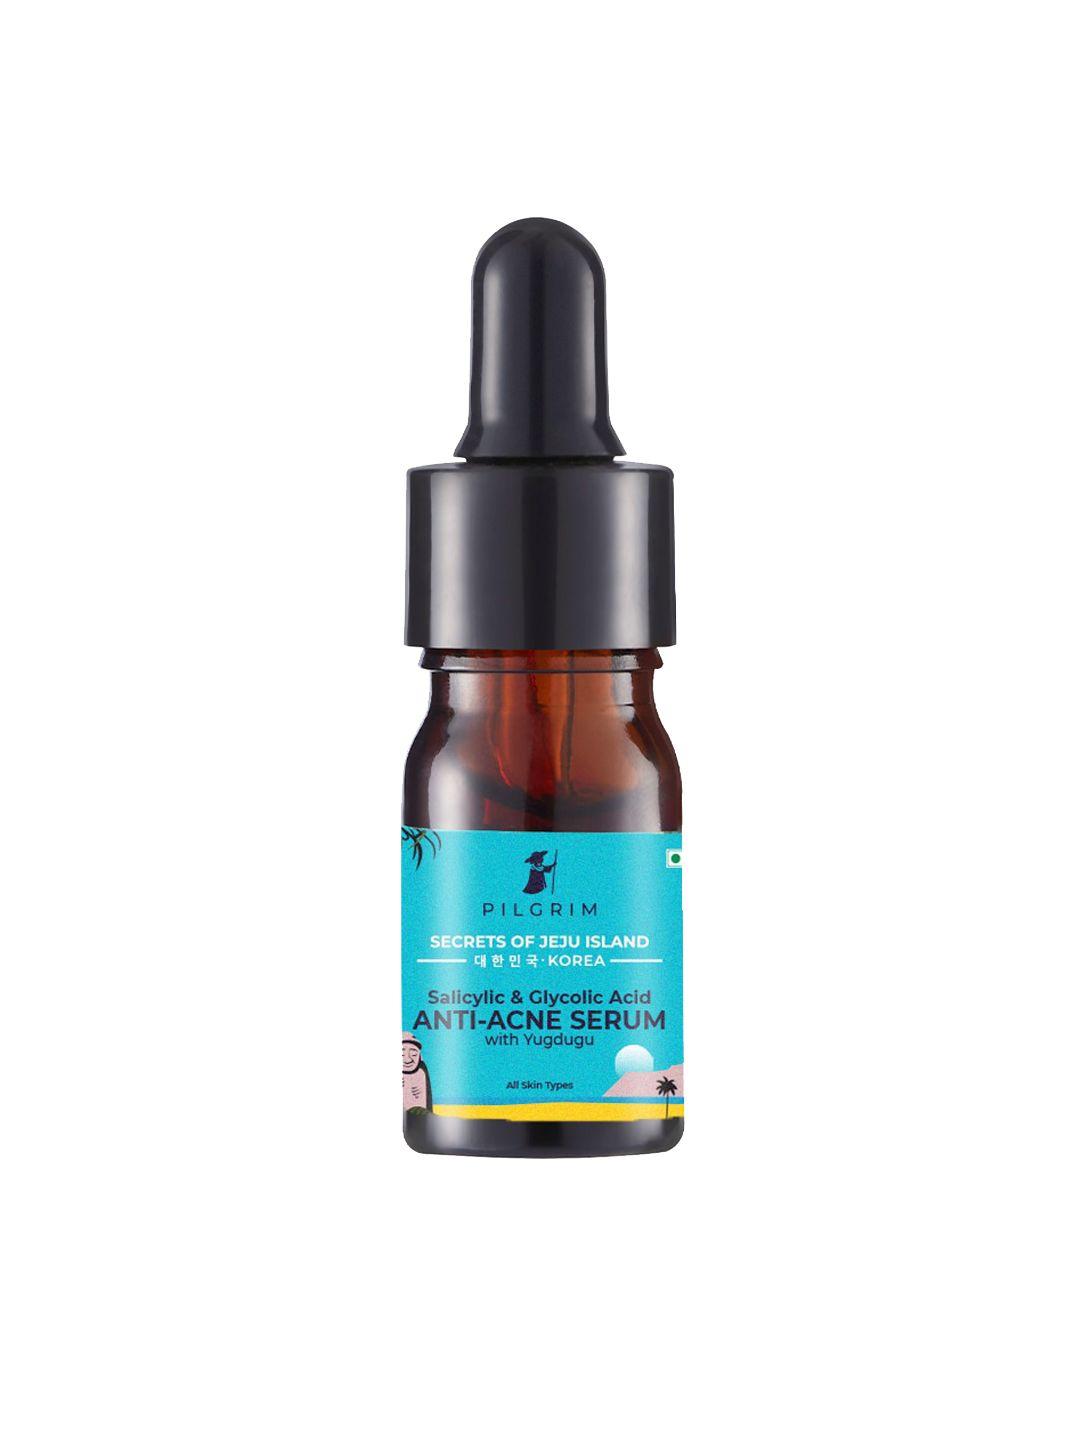 pilgrim minis anti-acne face serum with salicylic acid & glycolic acid - 5 ml